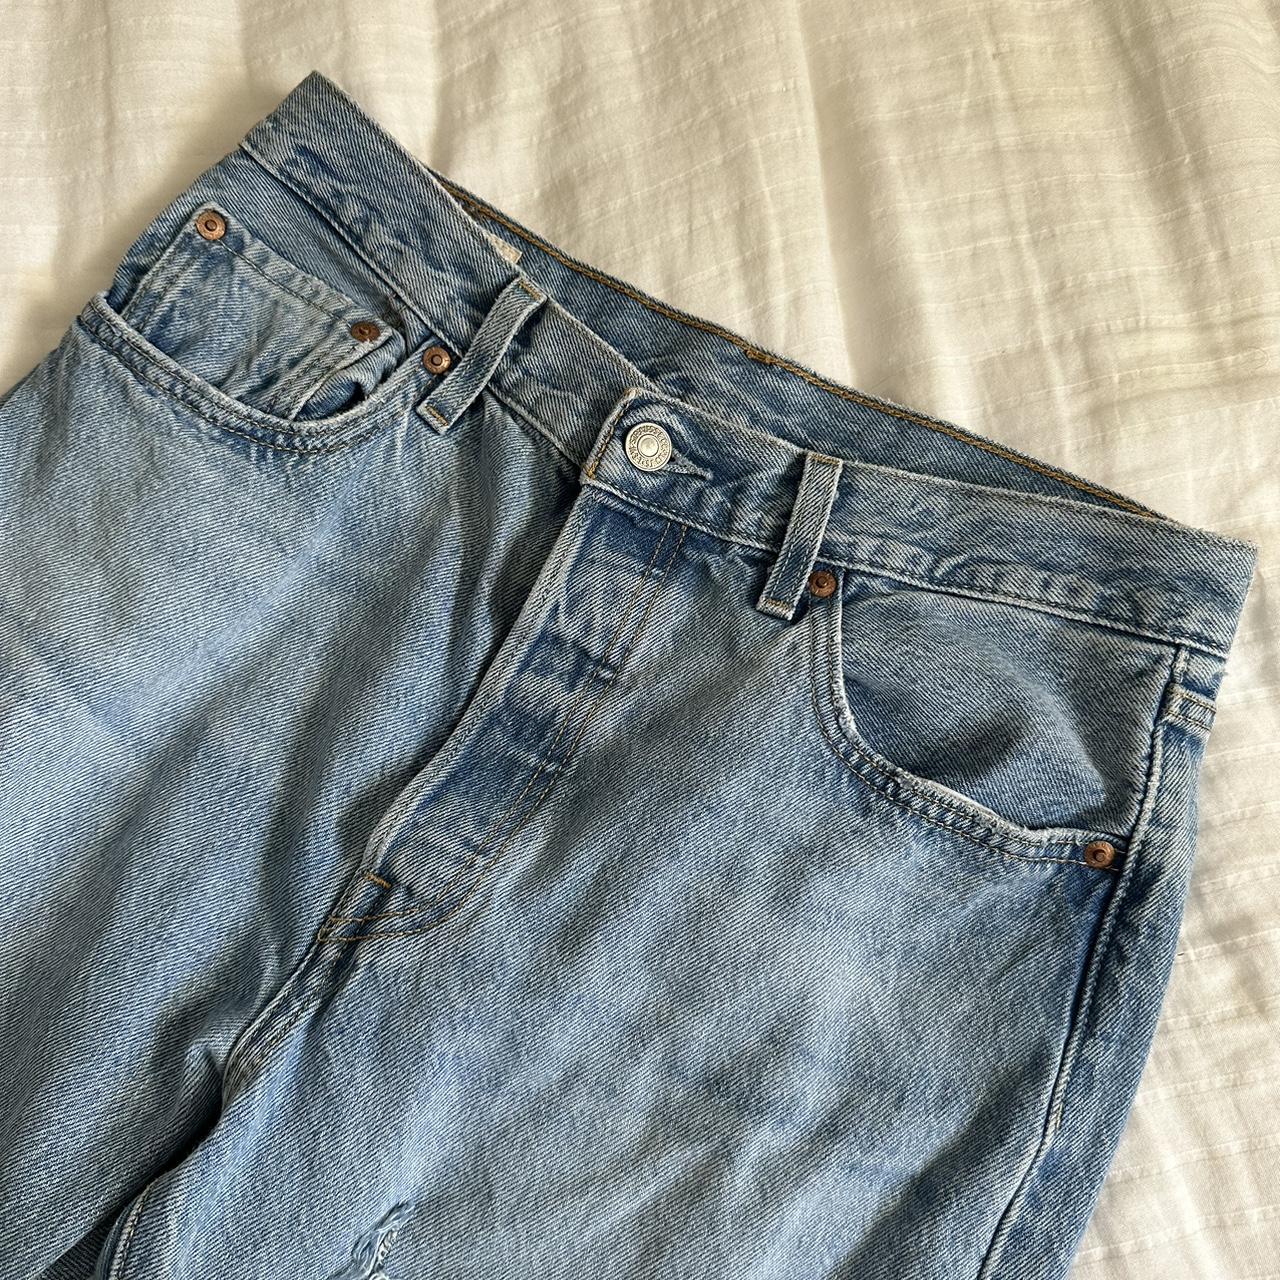 Levi’s Straight Leg Denim Jeans - Excellent Condition - Depop